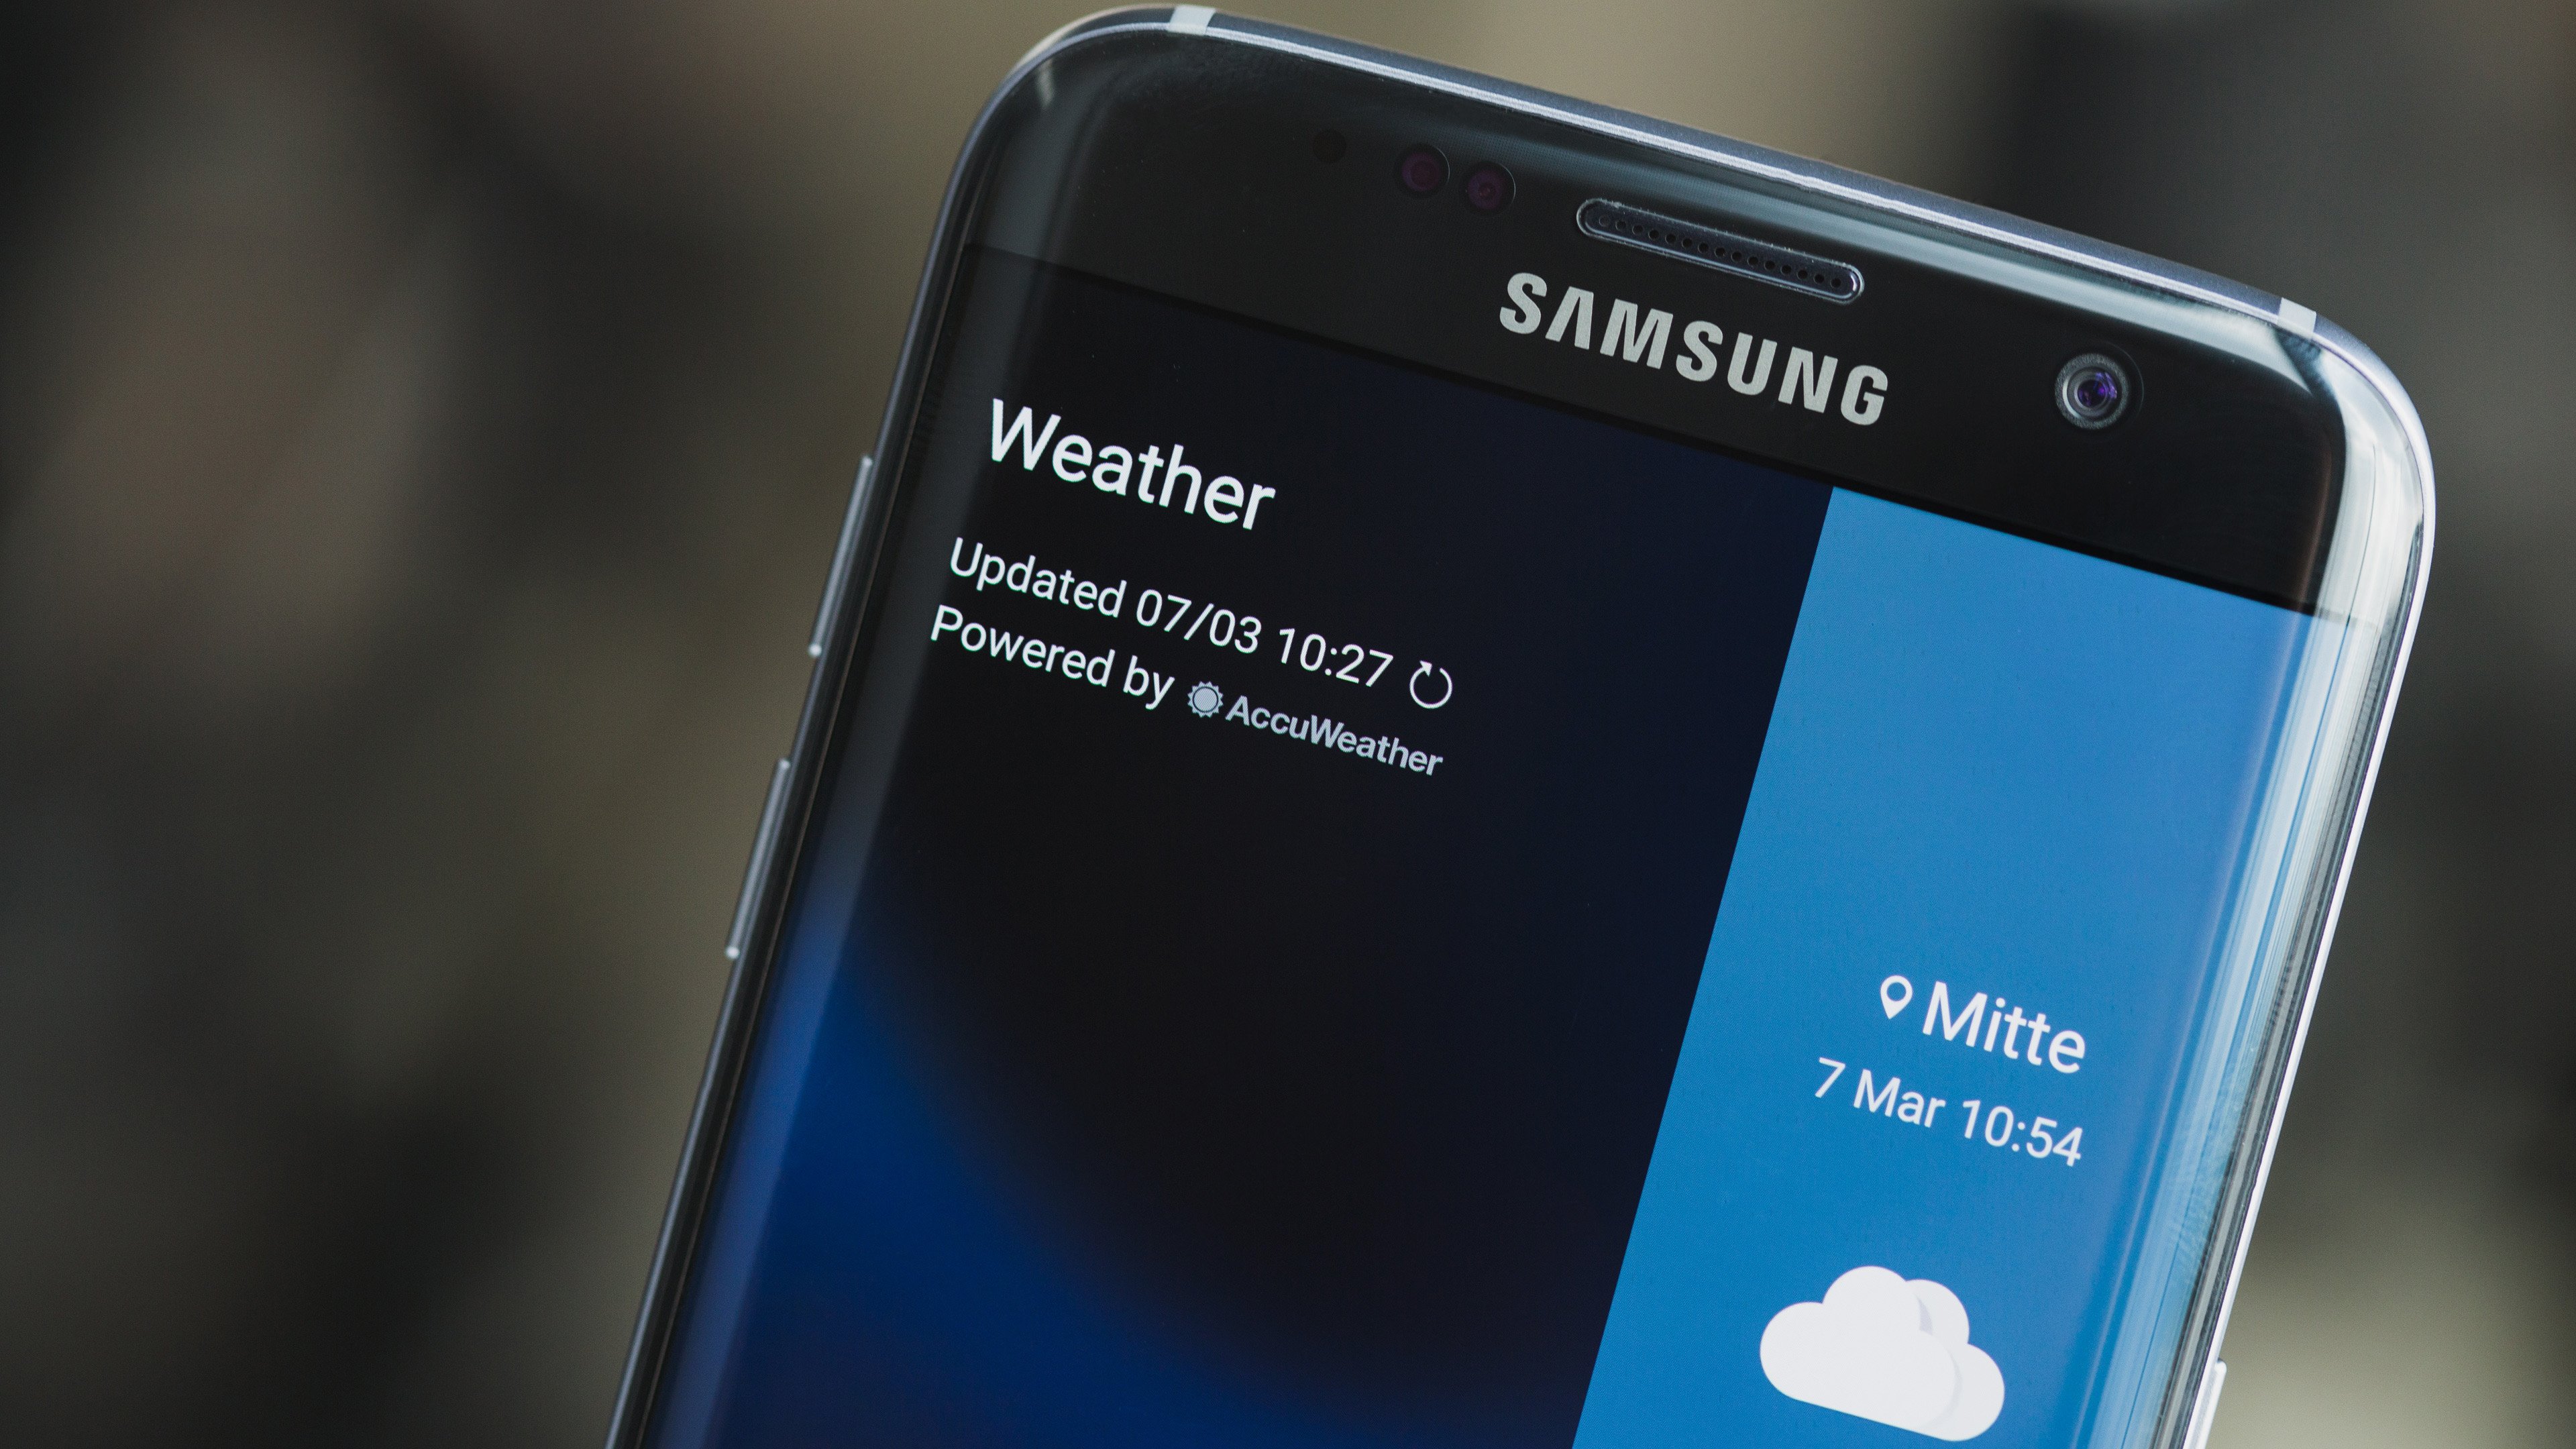 Samsung weather